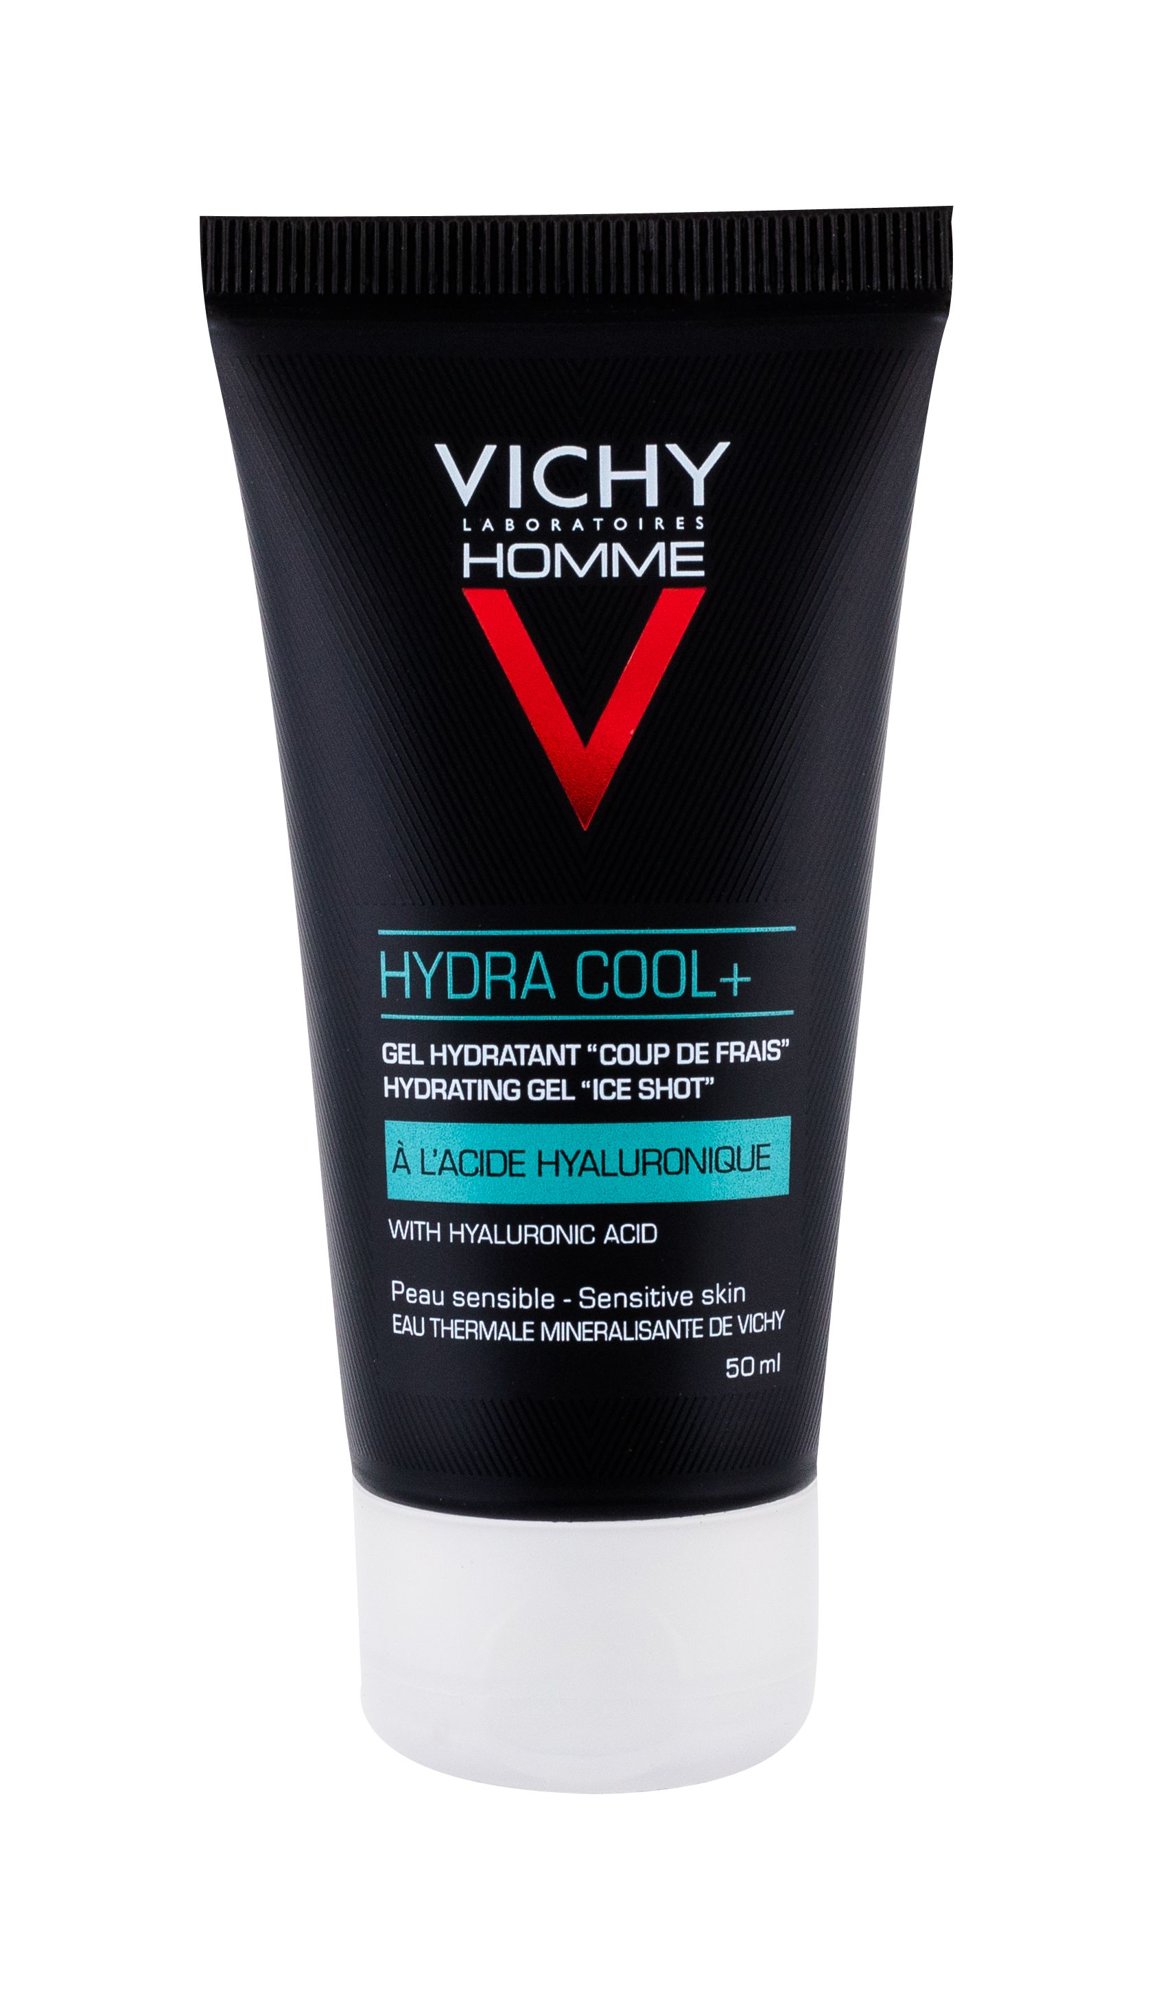 Vichy Homme Hydra Cool+ veido gelis